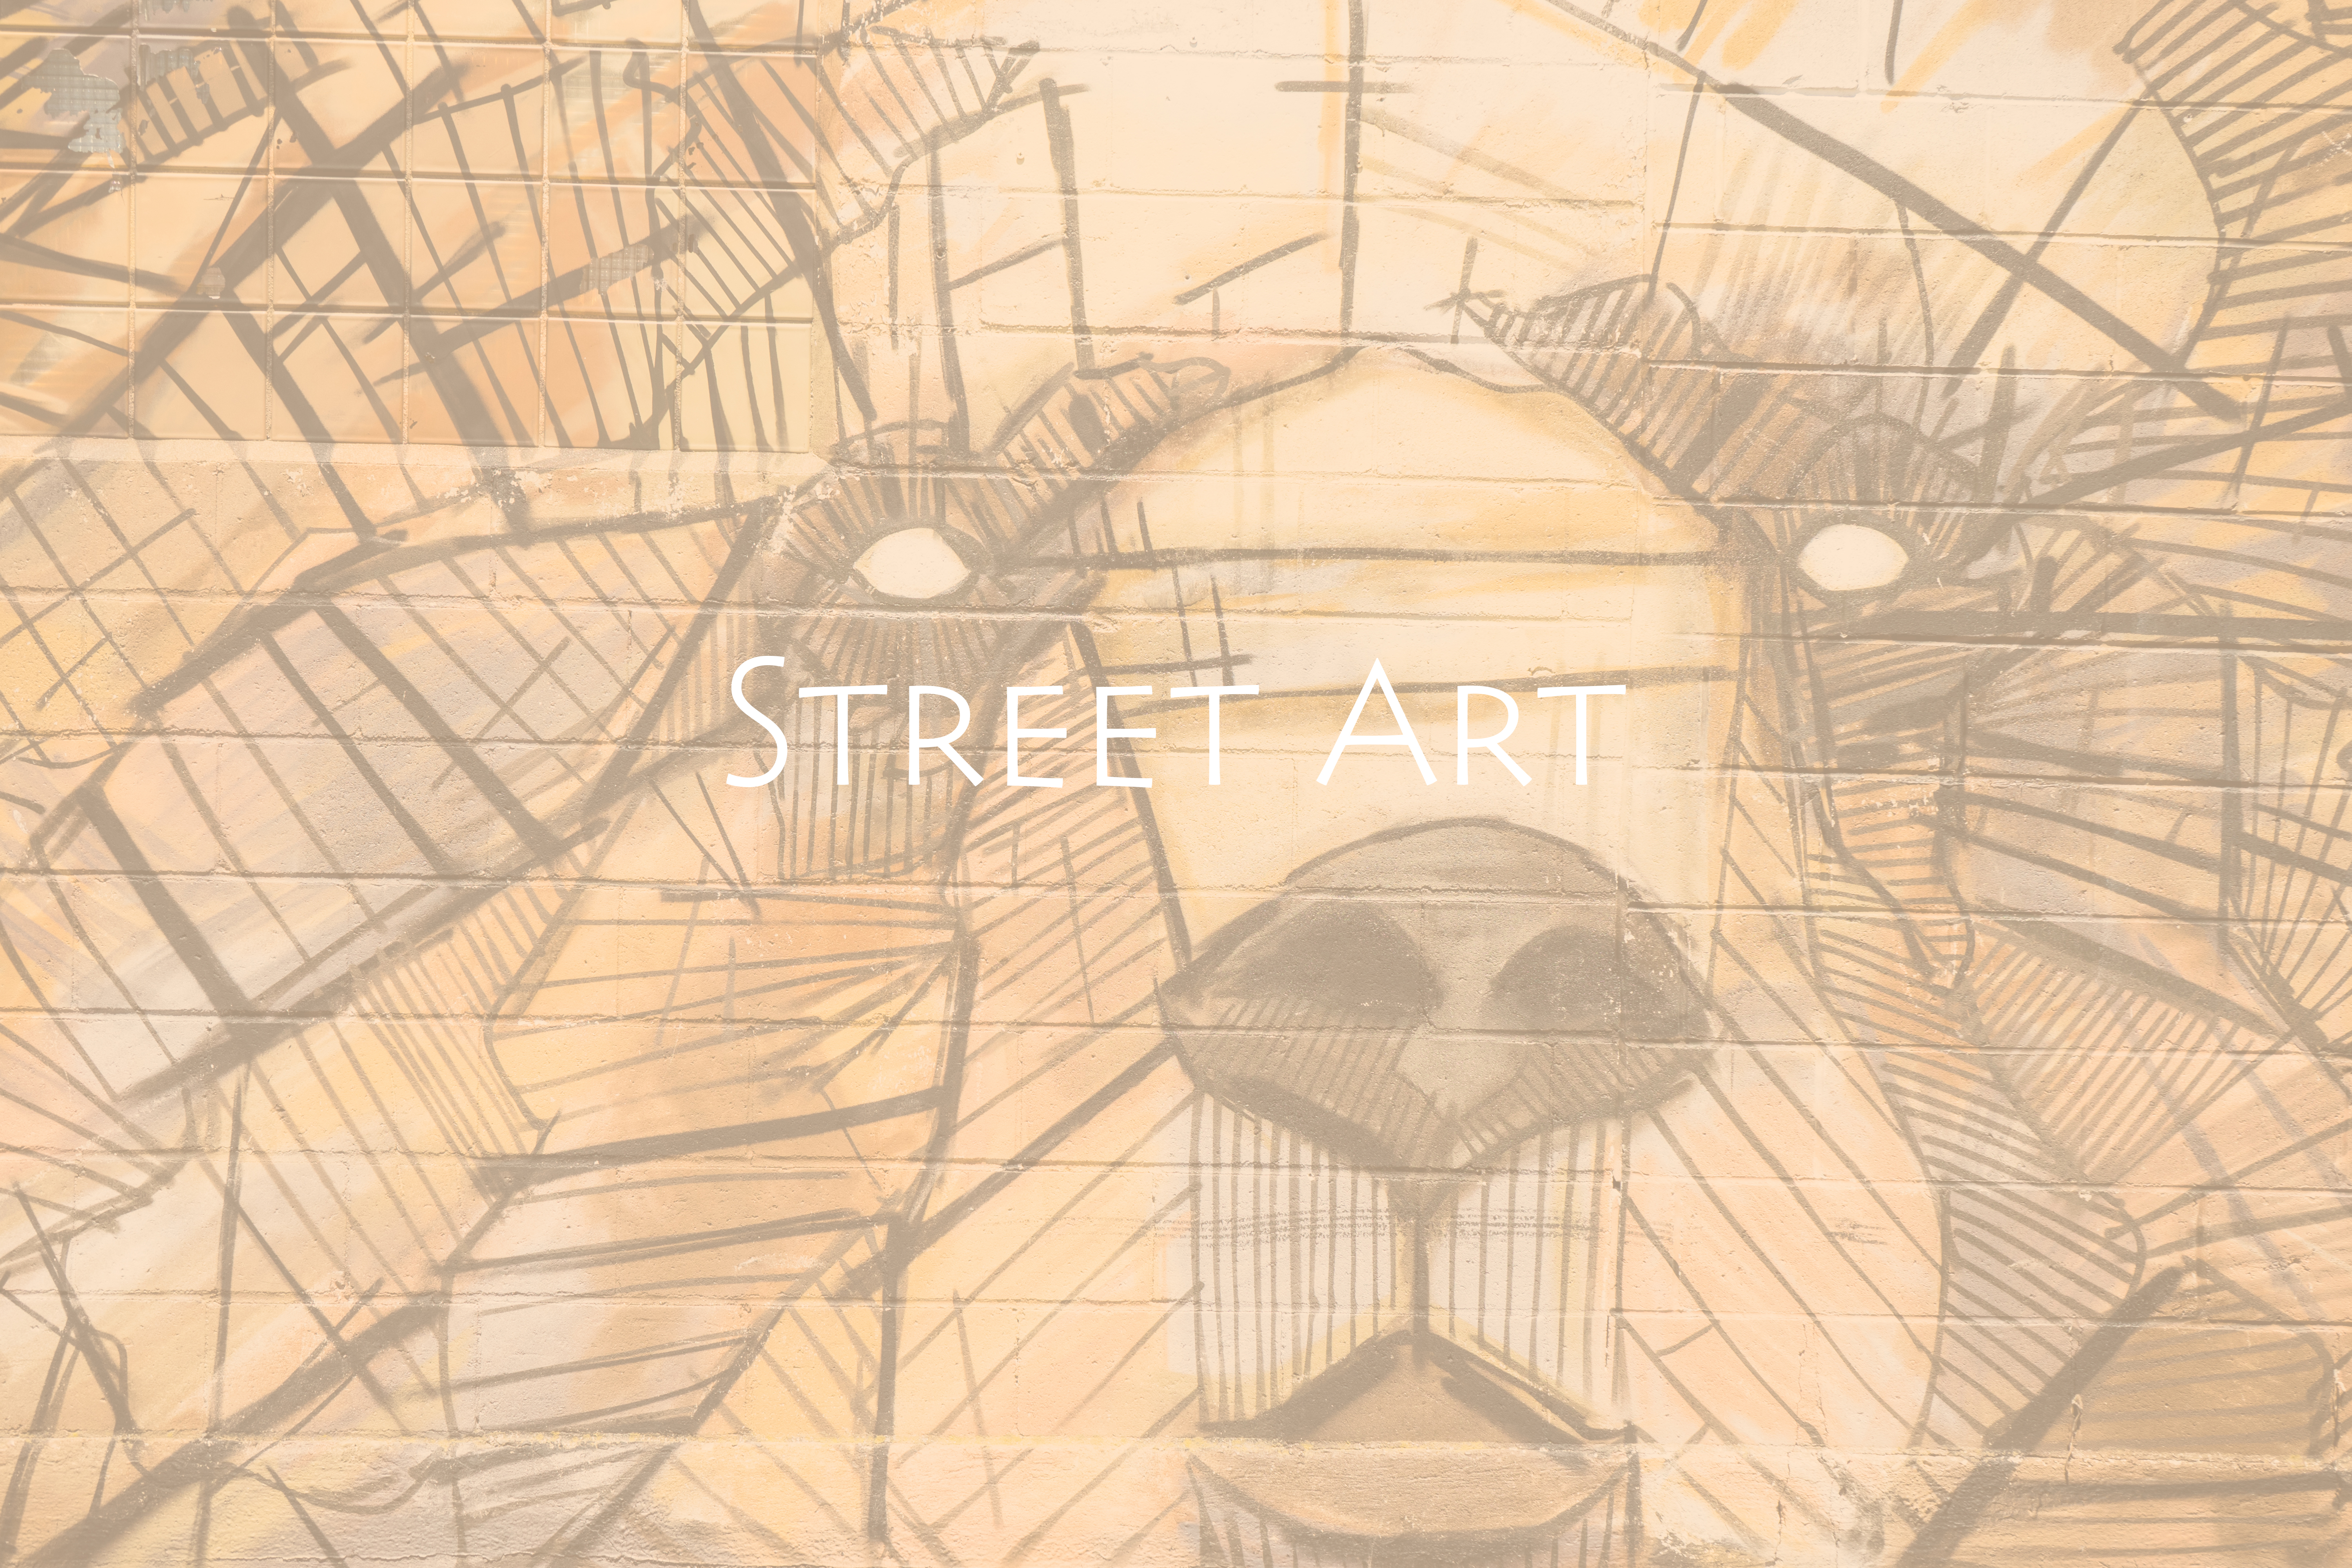 streetartbear